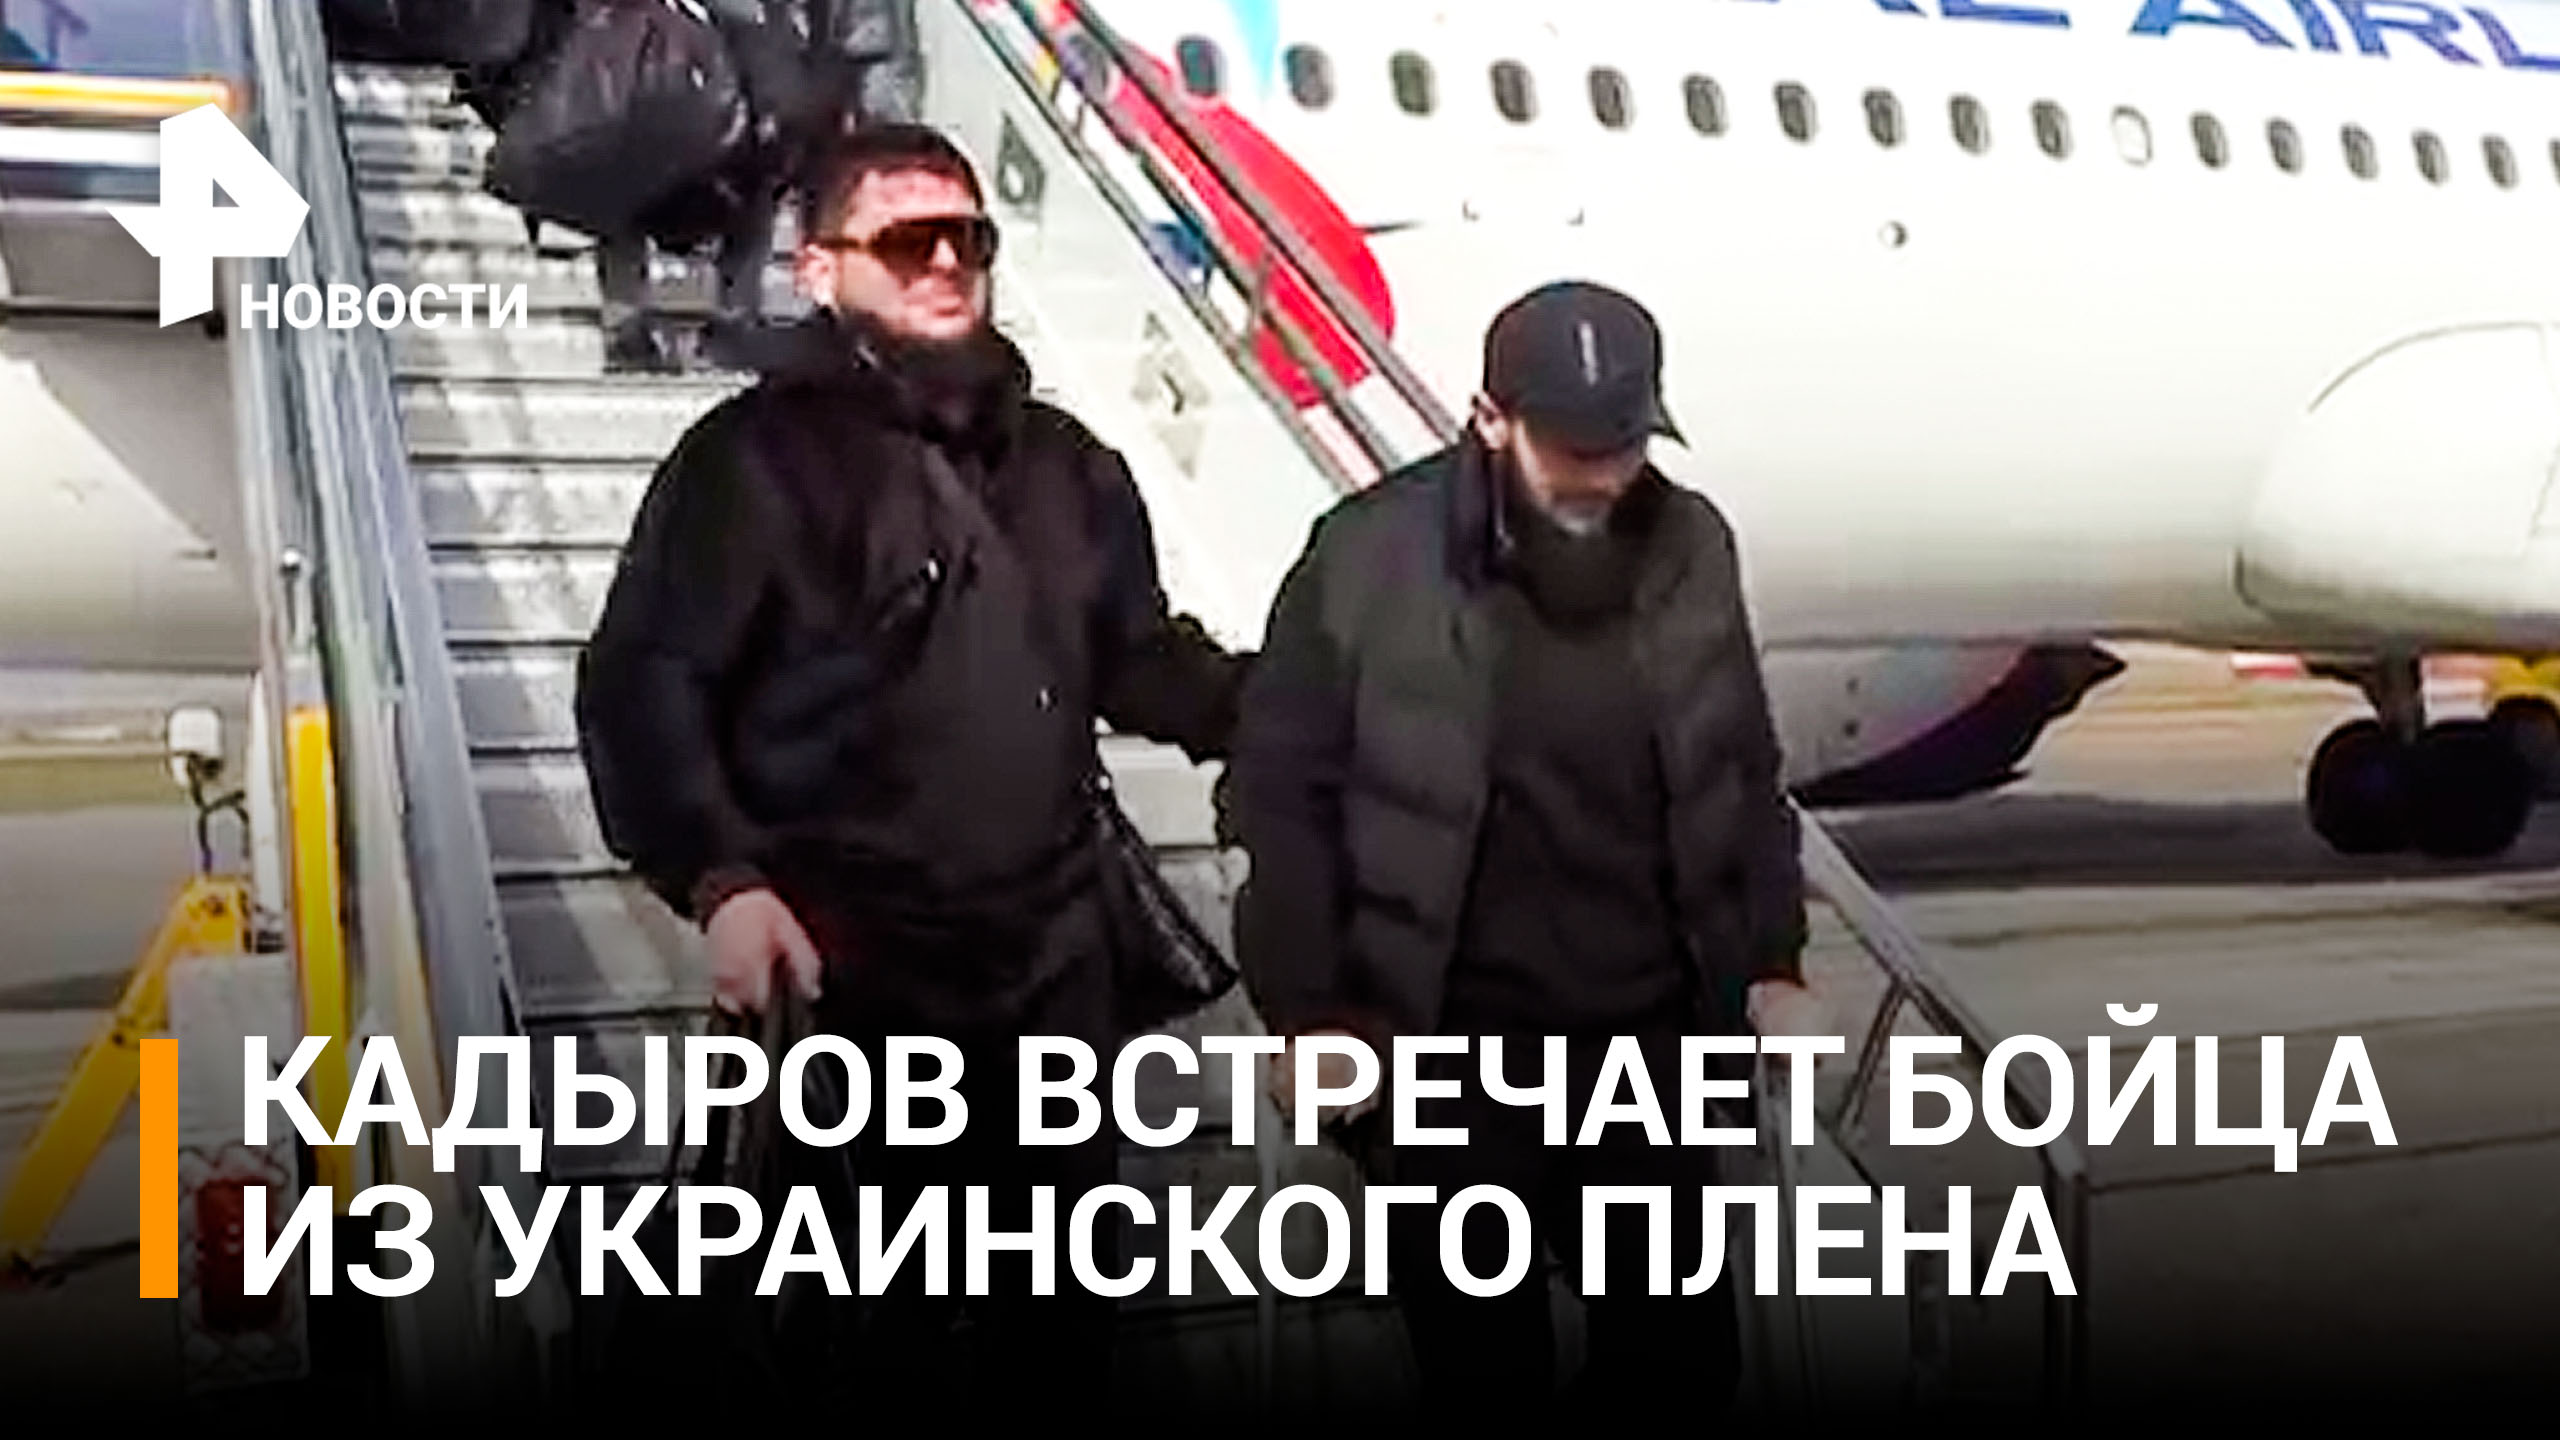 Кадыров встретил в Грозном бойца, вернувшегося из украинского плена / РЕН Новости